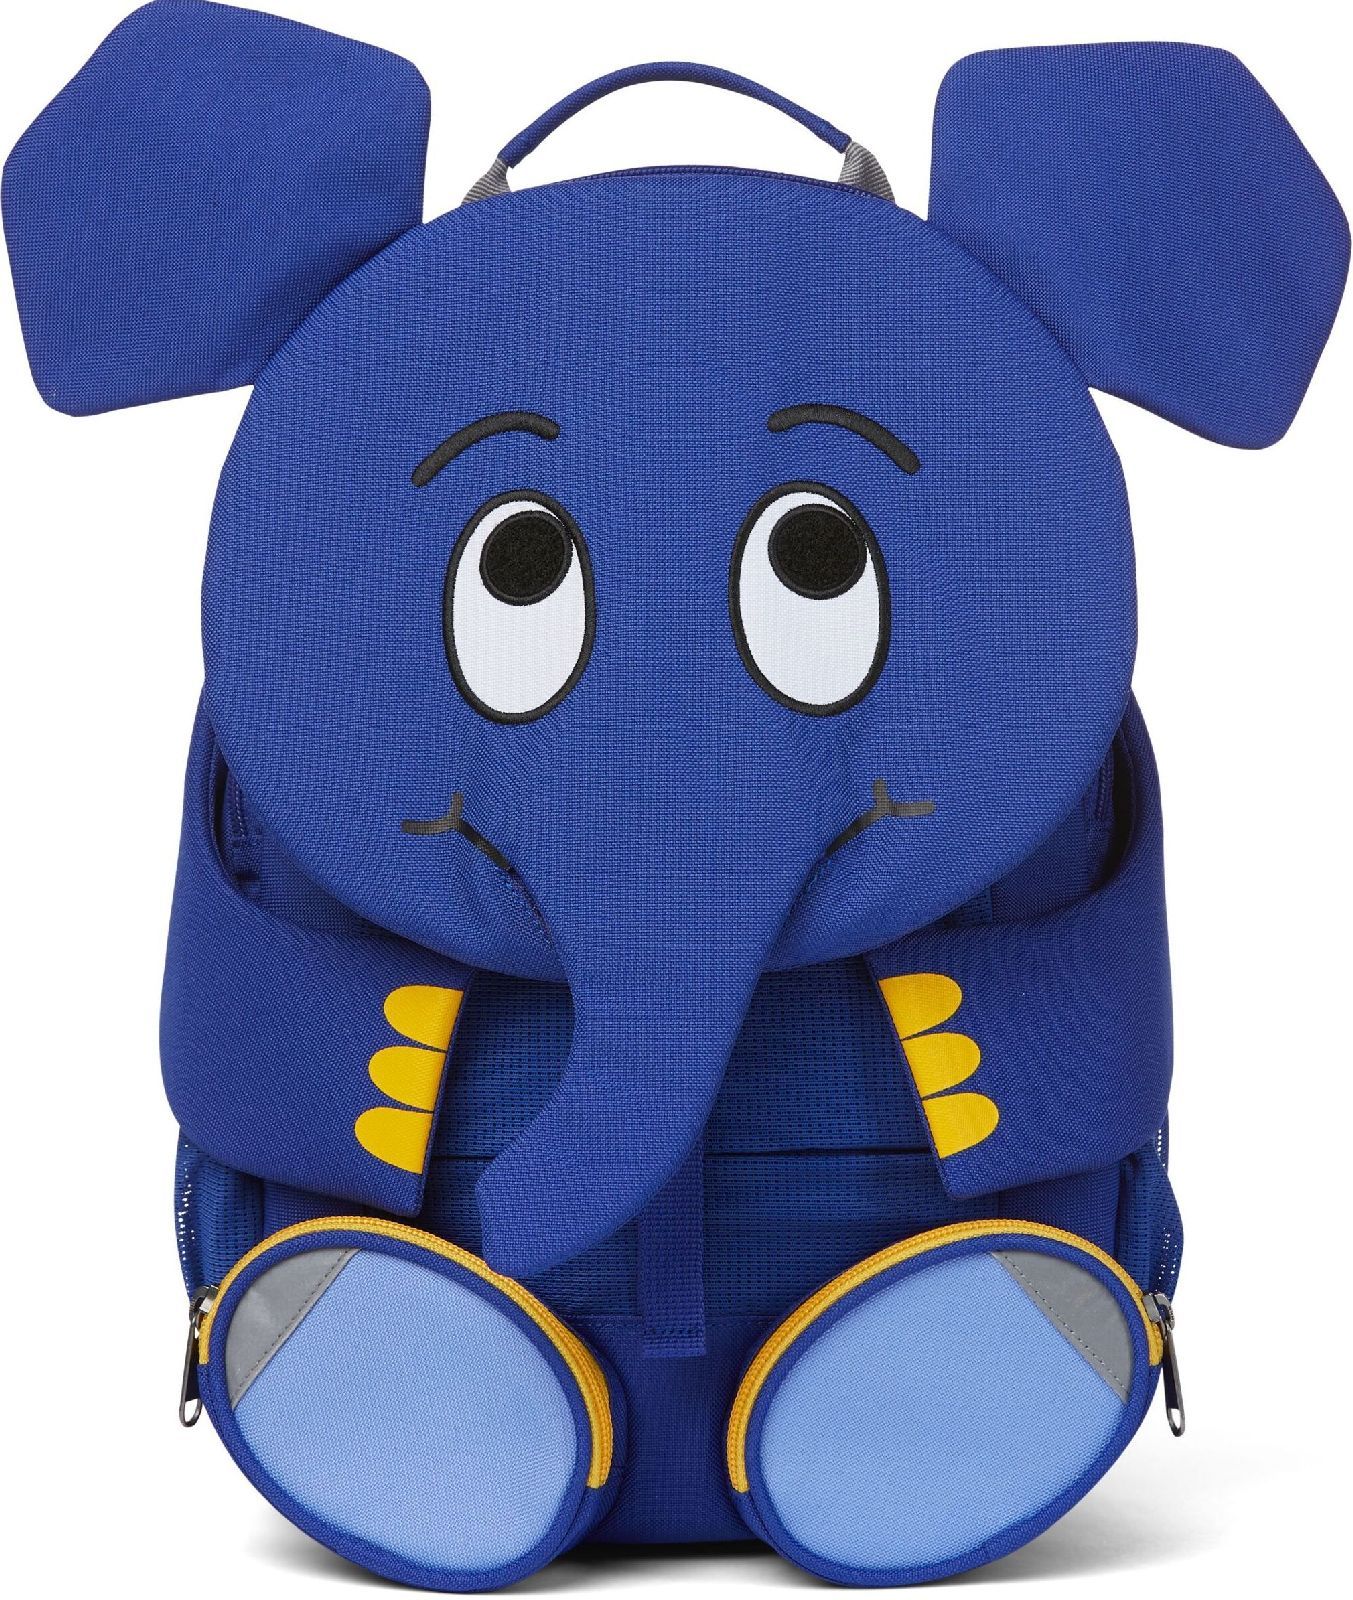 Barefoot Dětský batoh do školky Affenzahn Elephant large - blue bosá